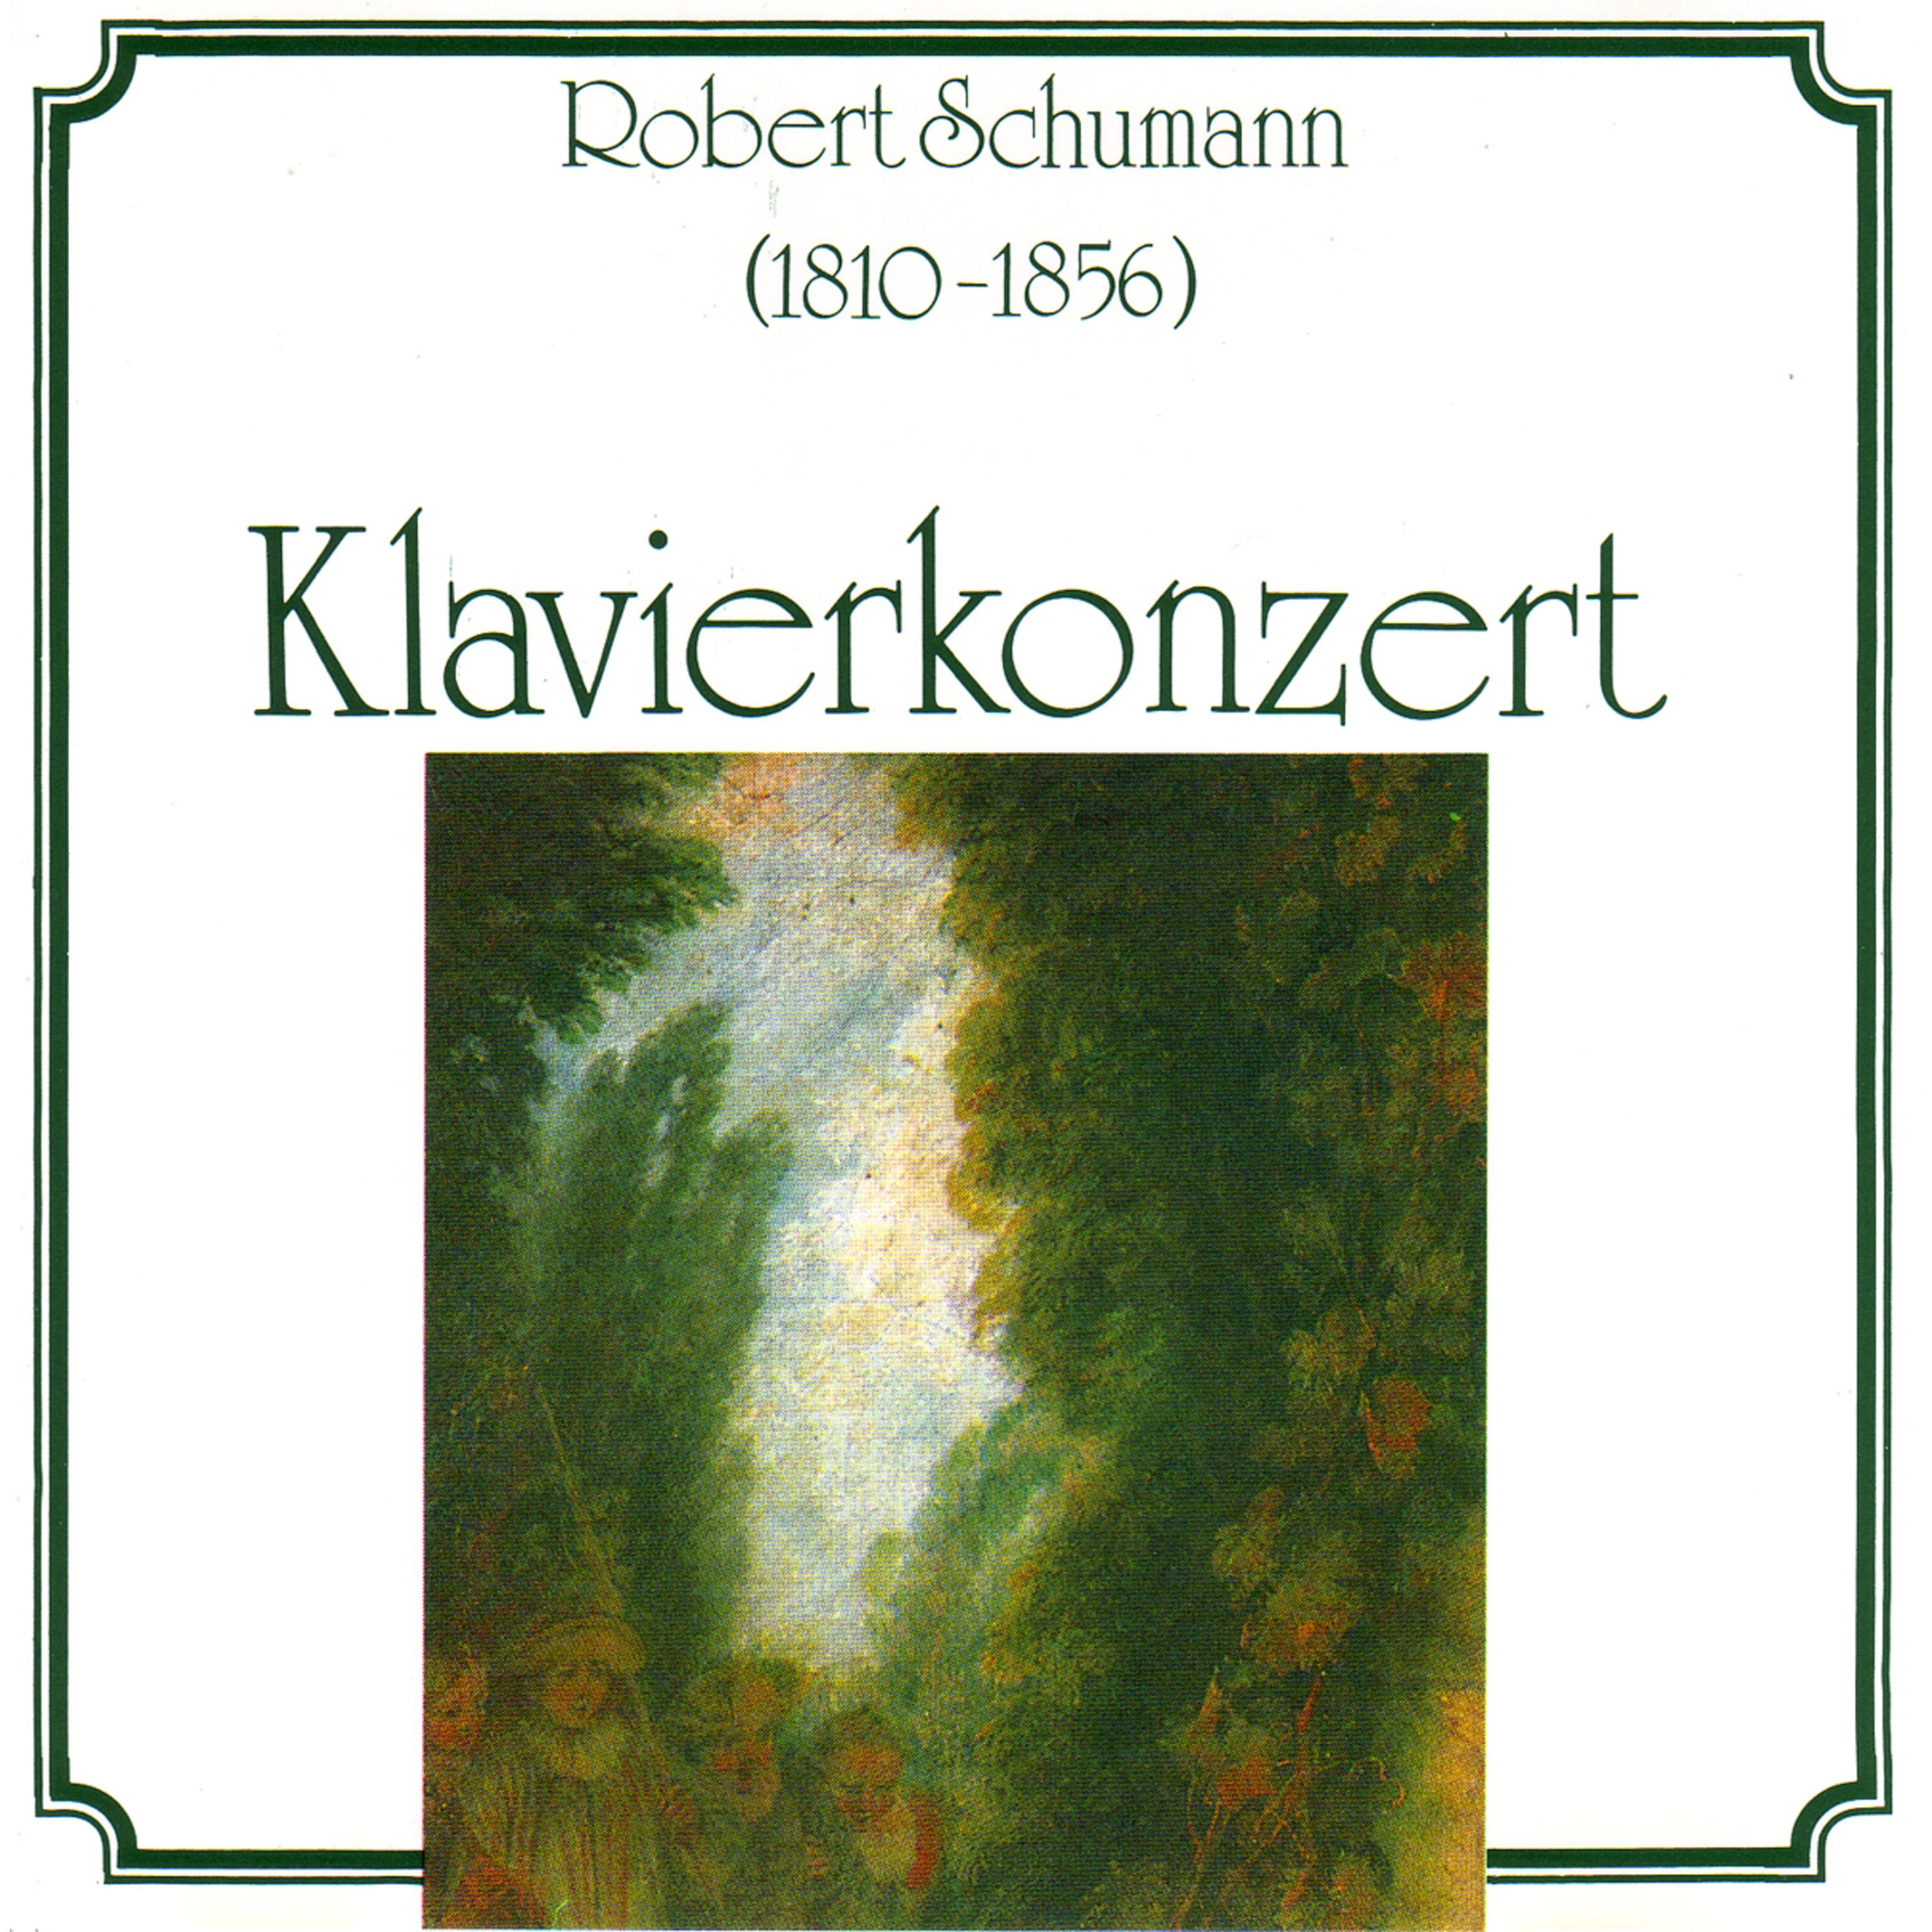 Robert Schumann - Klavierkonzert